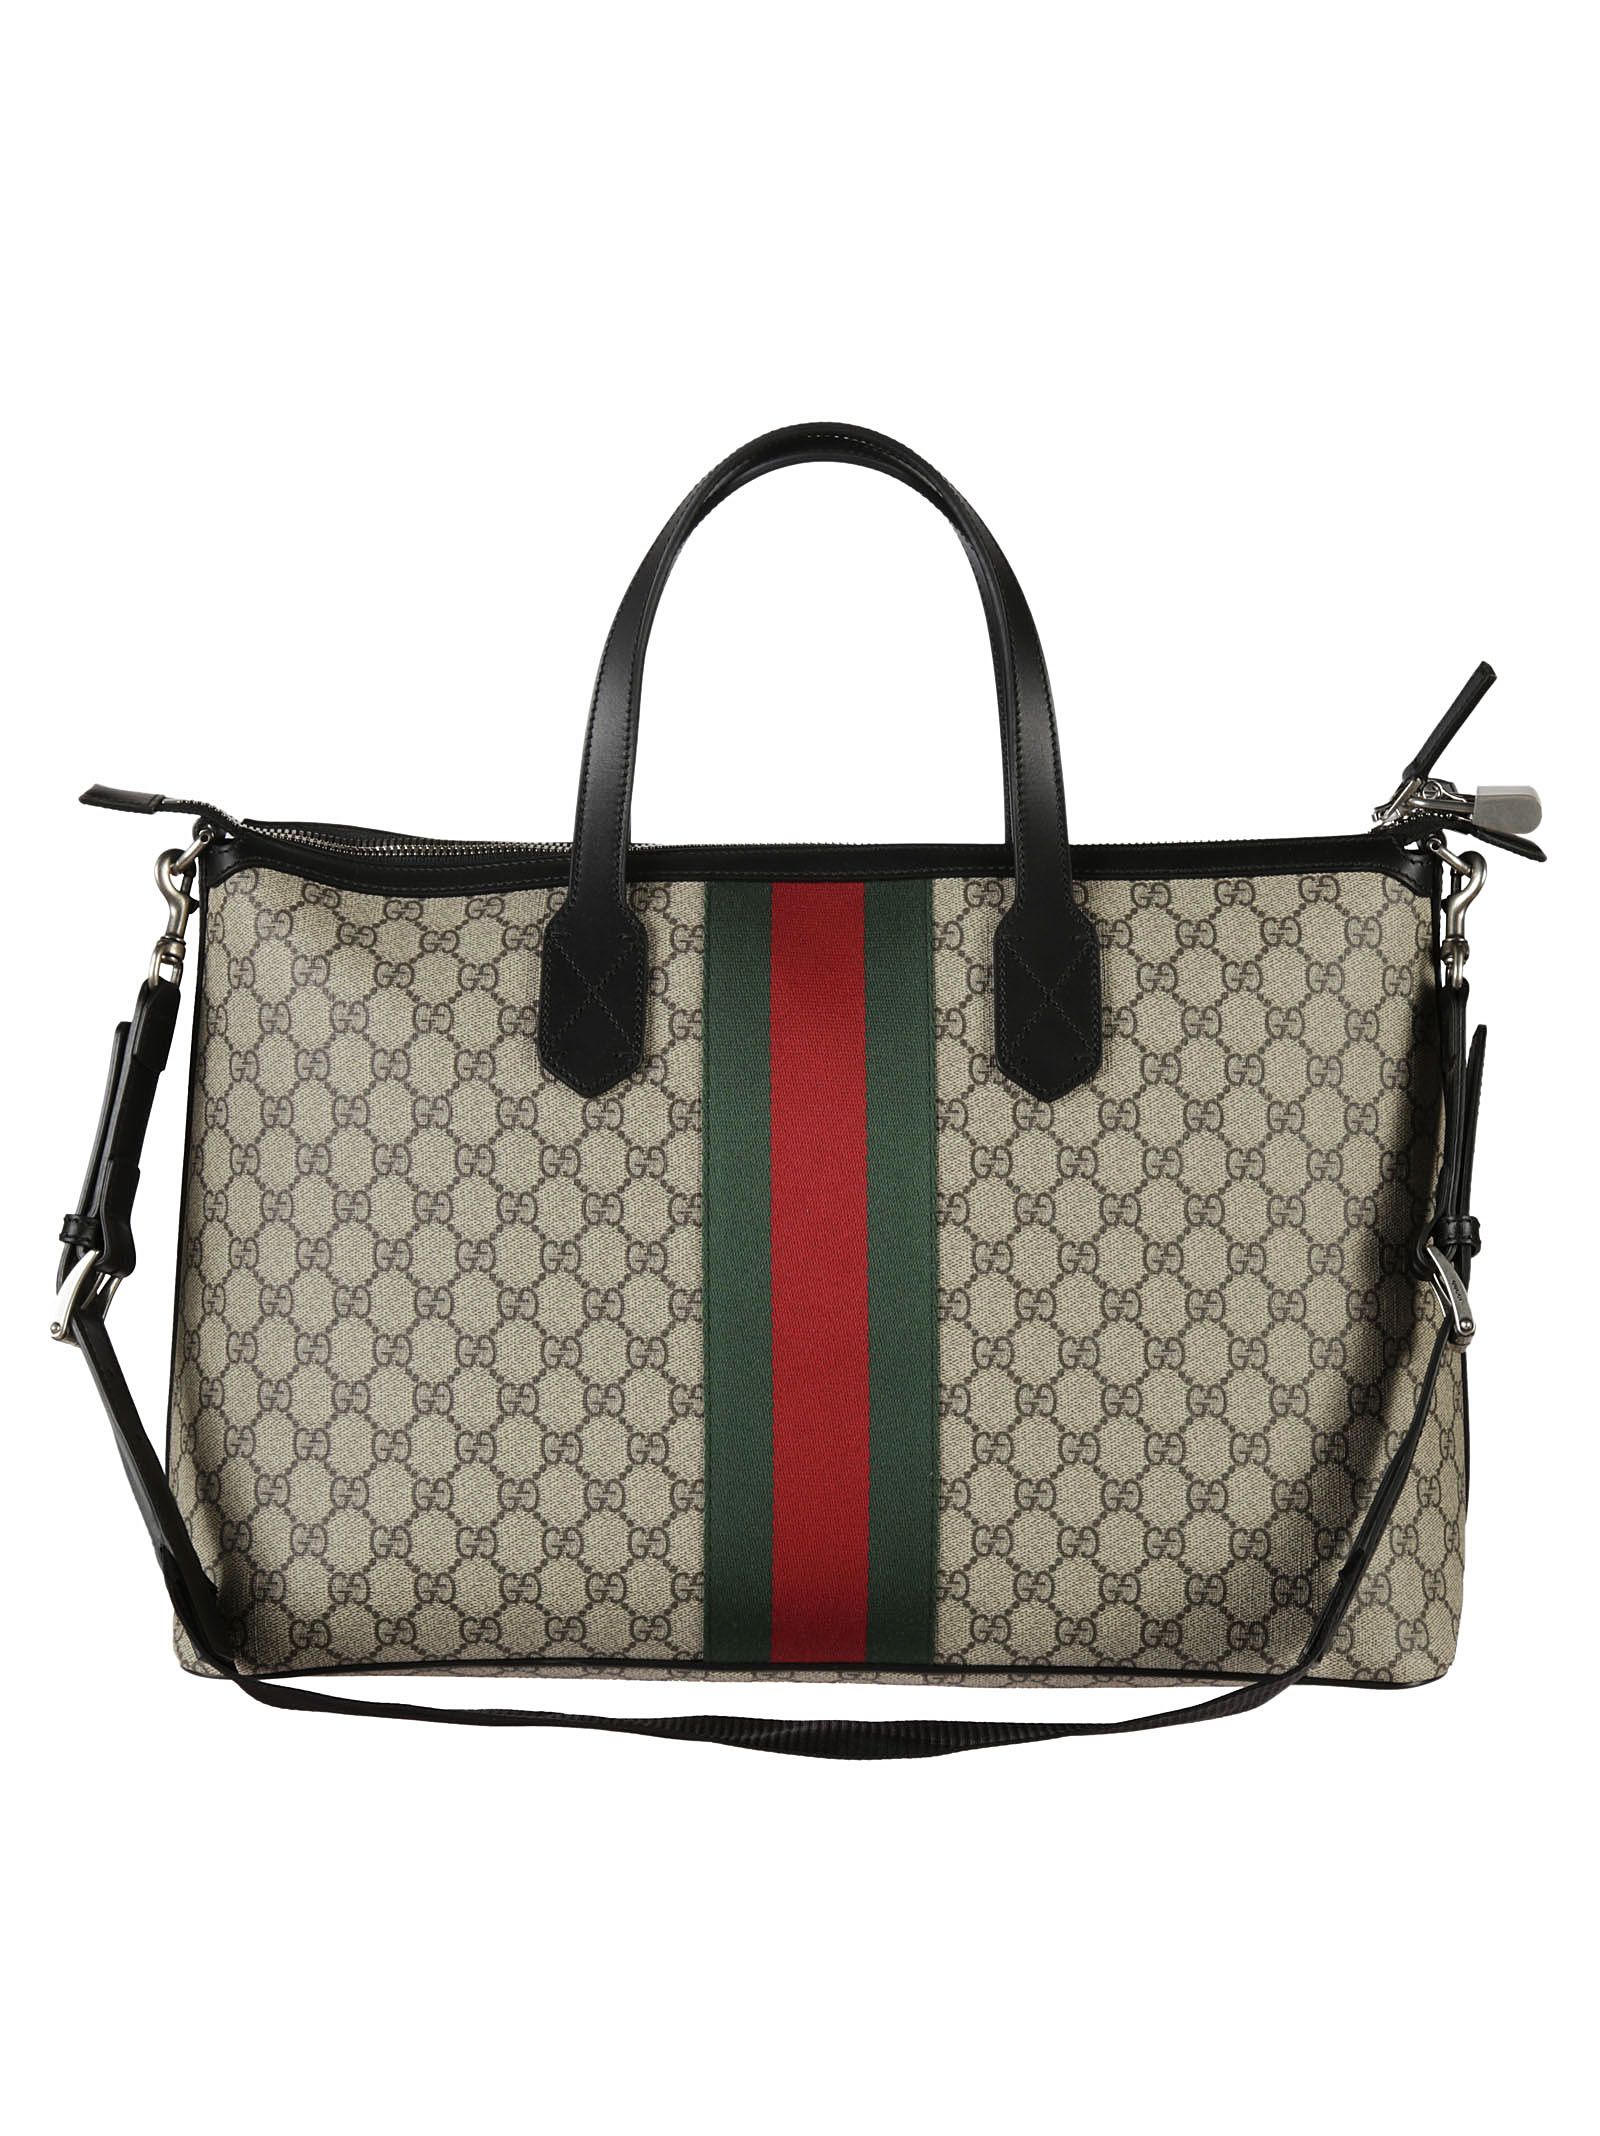 Gucci - Gucci Web GG Supreme Shoulder Bag - Beige, Women's Shoulder ...